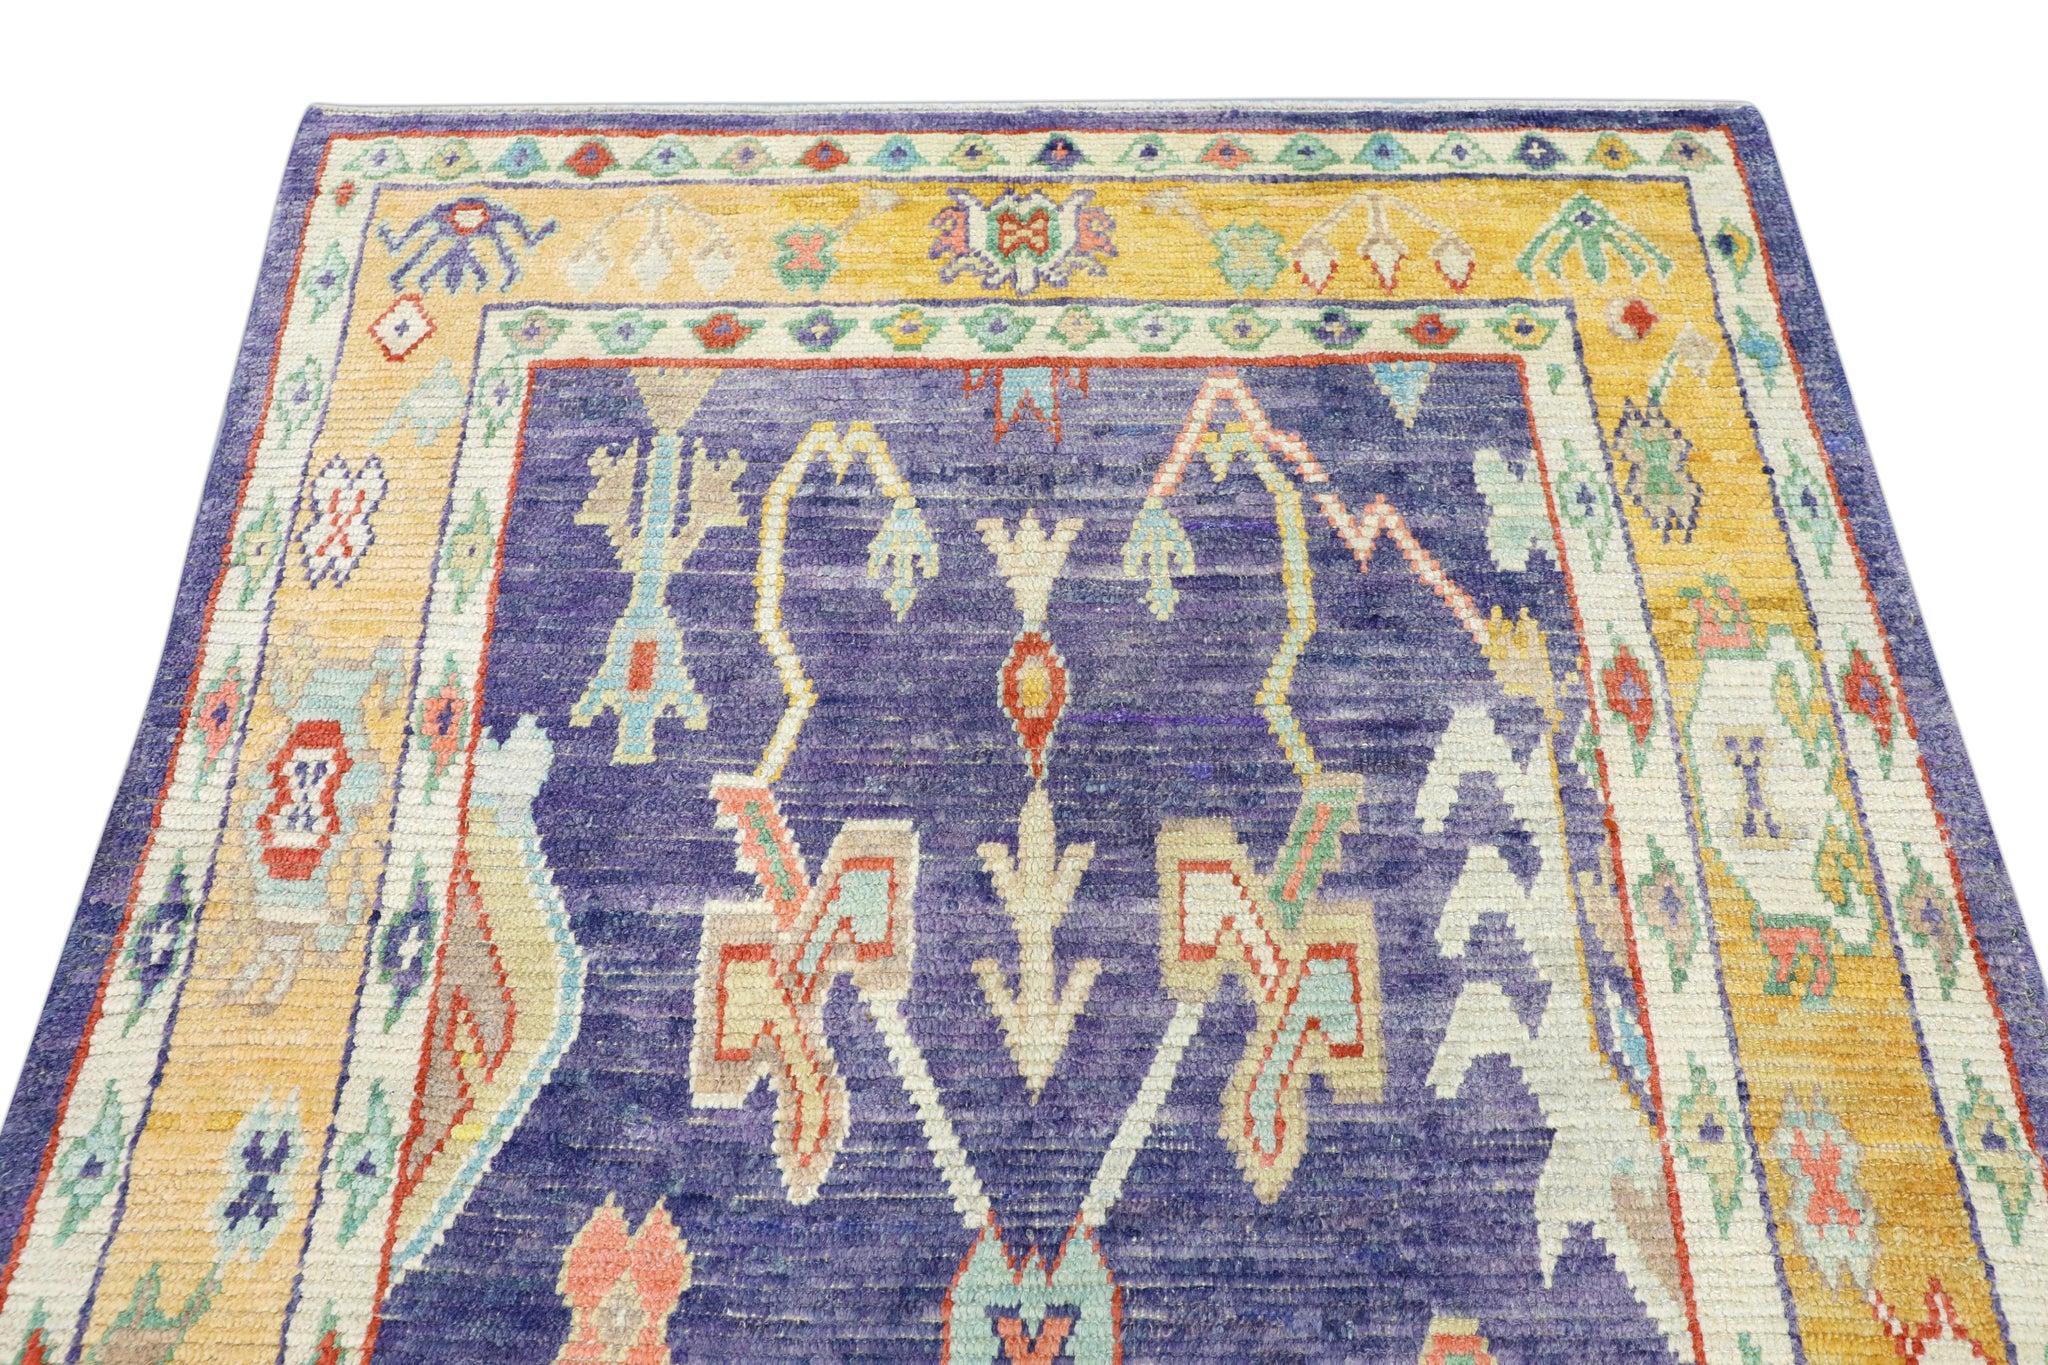 Vegetable Dyed Handwoven Wool Carpet Turkish Oushak Rug 5'4